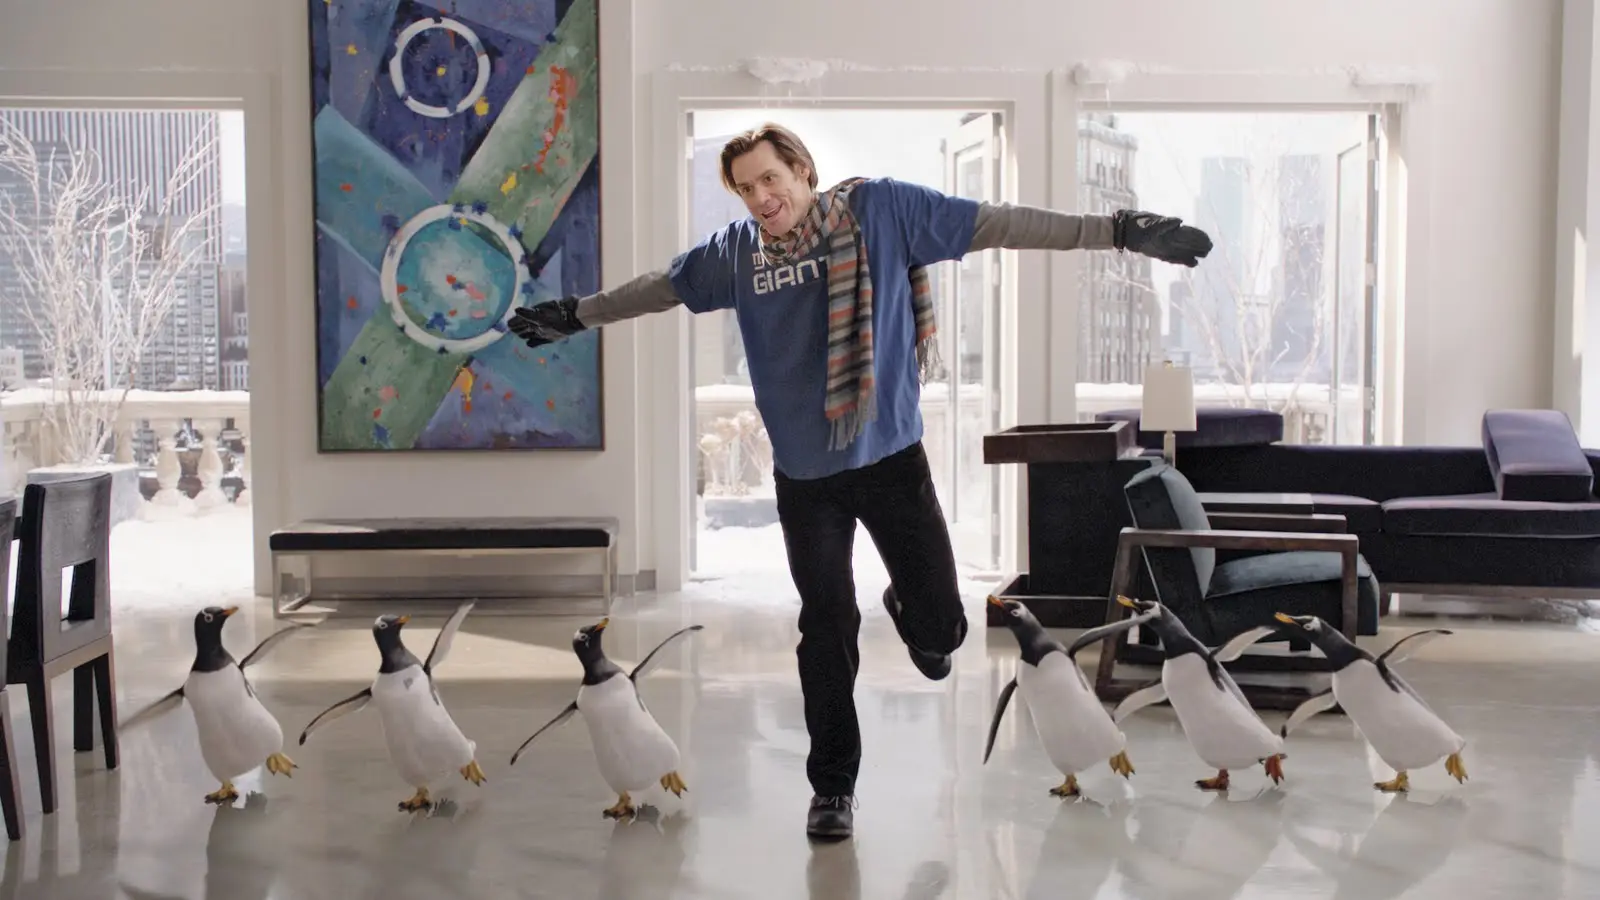 Recenze: Pan Popper a jeho tučňáci jsou trochu studená zábava